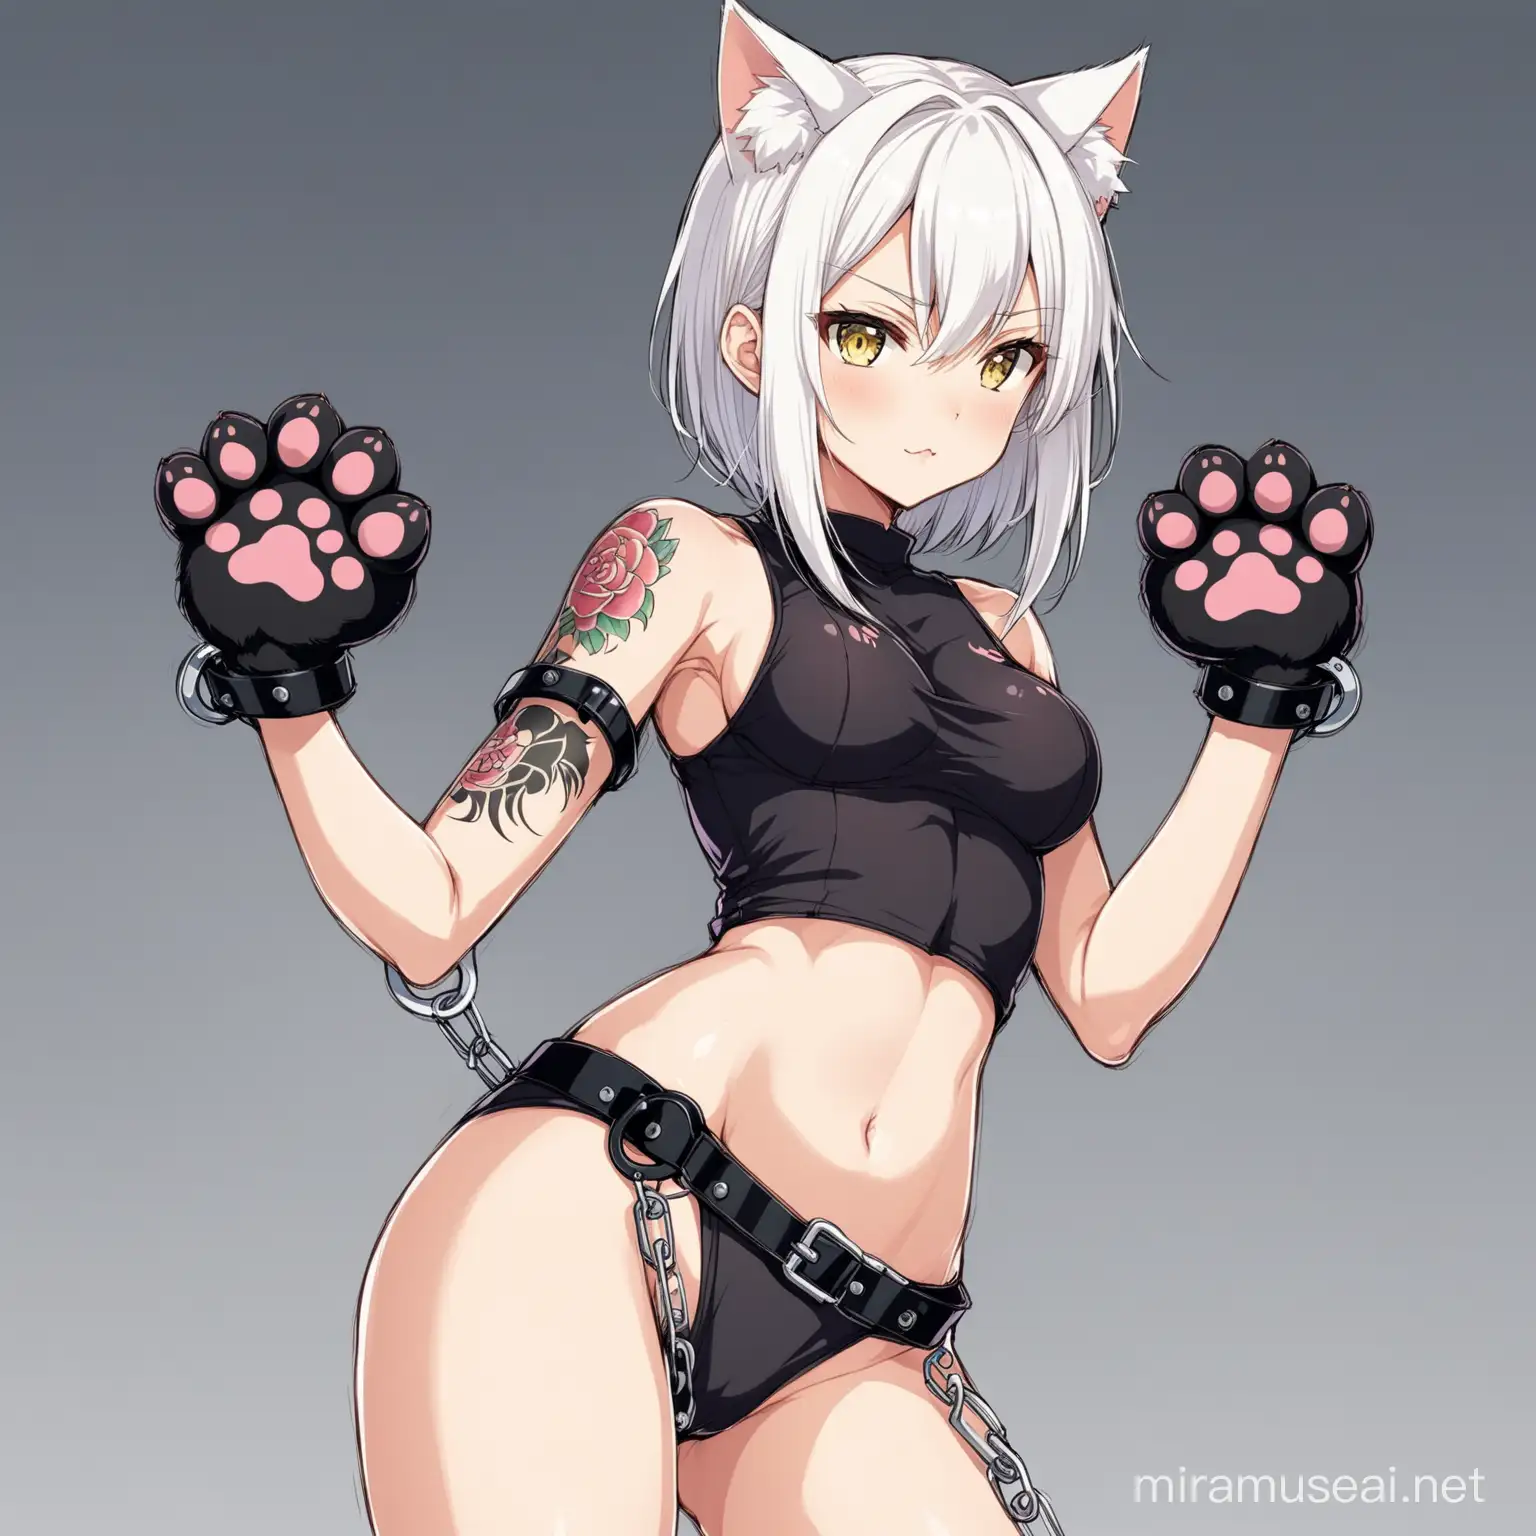 Anime, Catgirl, weiße Haare, sidecut, mit Katzen Pfoten Tattoo auf linker arschbacke, in Handschellen